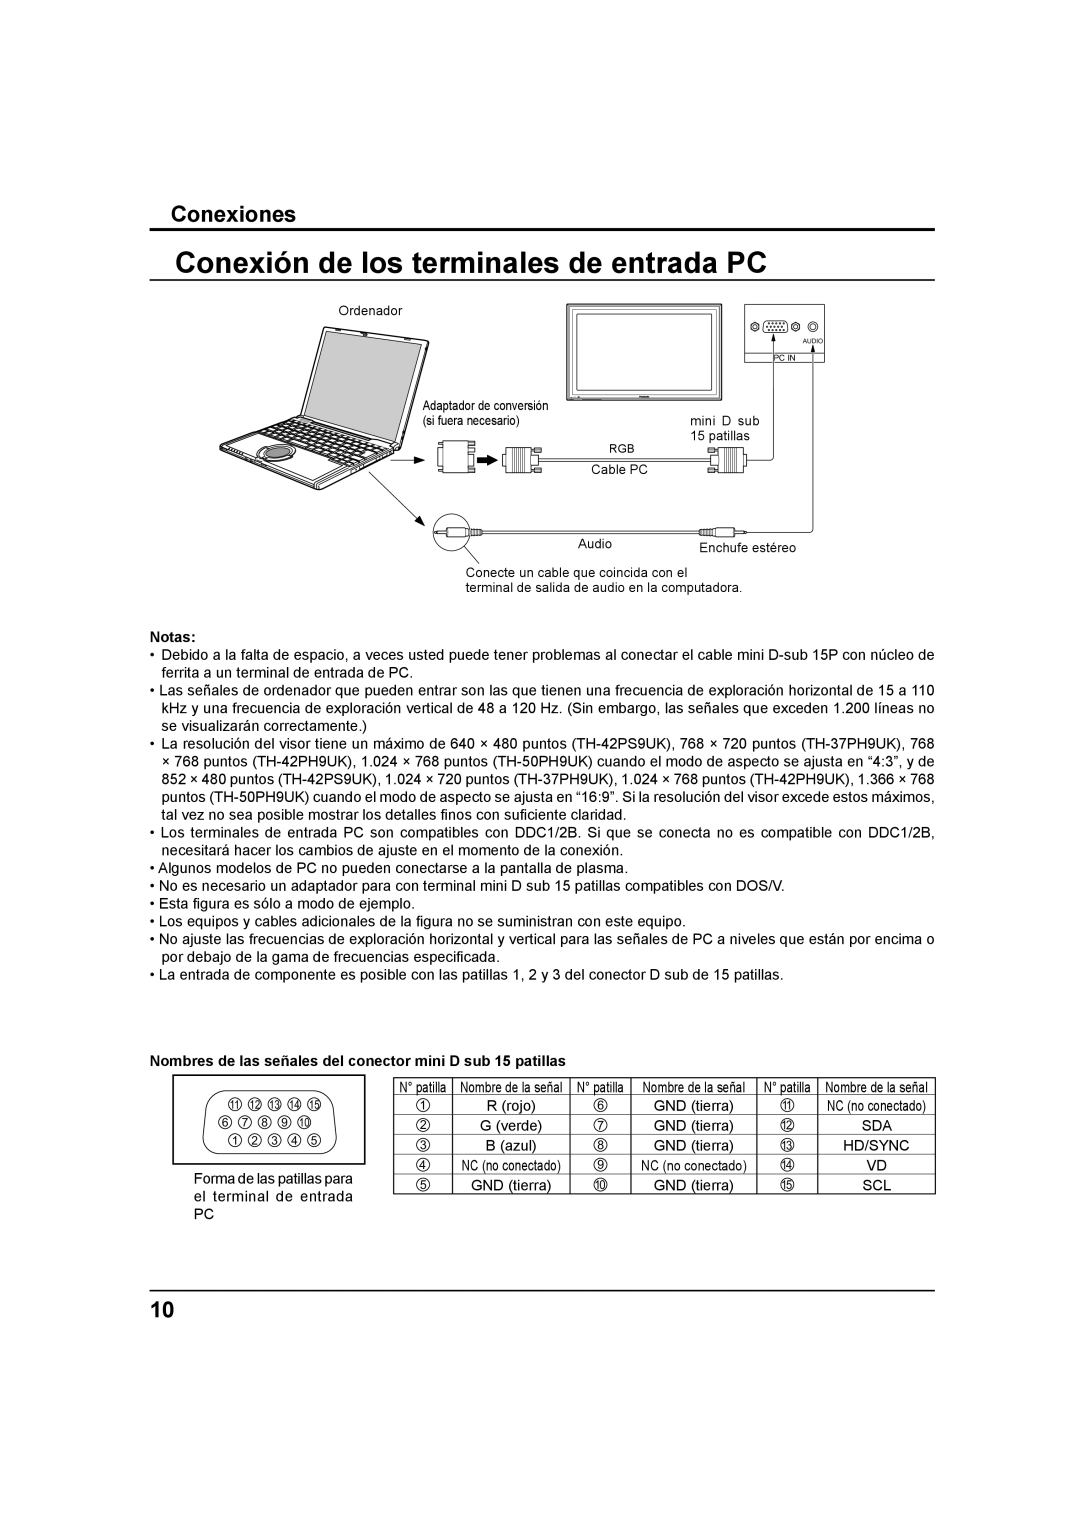 Panasonic TH-37PH9UK, TH 42PS9UK, TH 42PH9UK operating instructions Conexión de los terminales de entrada PC, Conexiones 